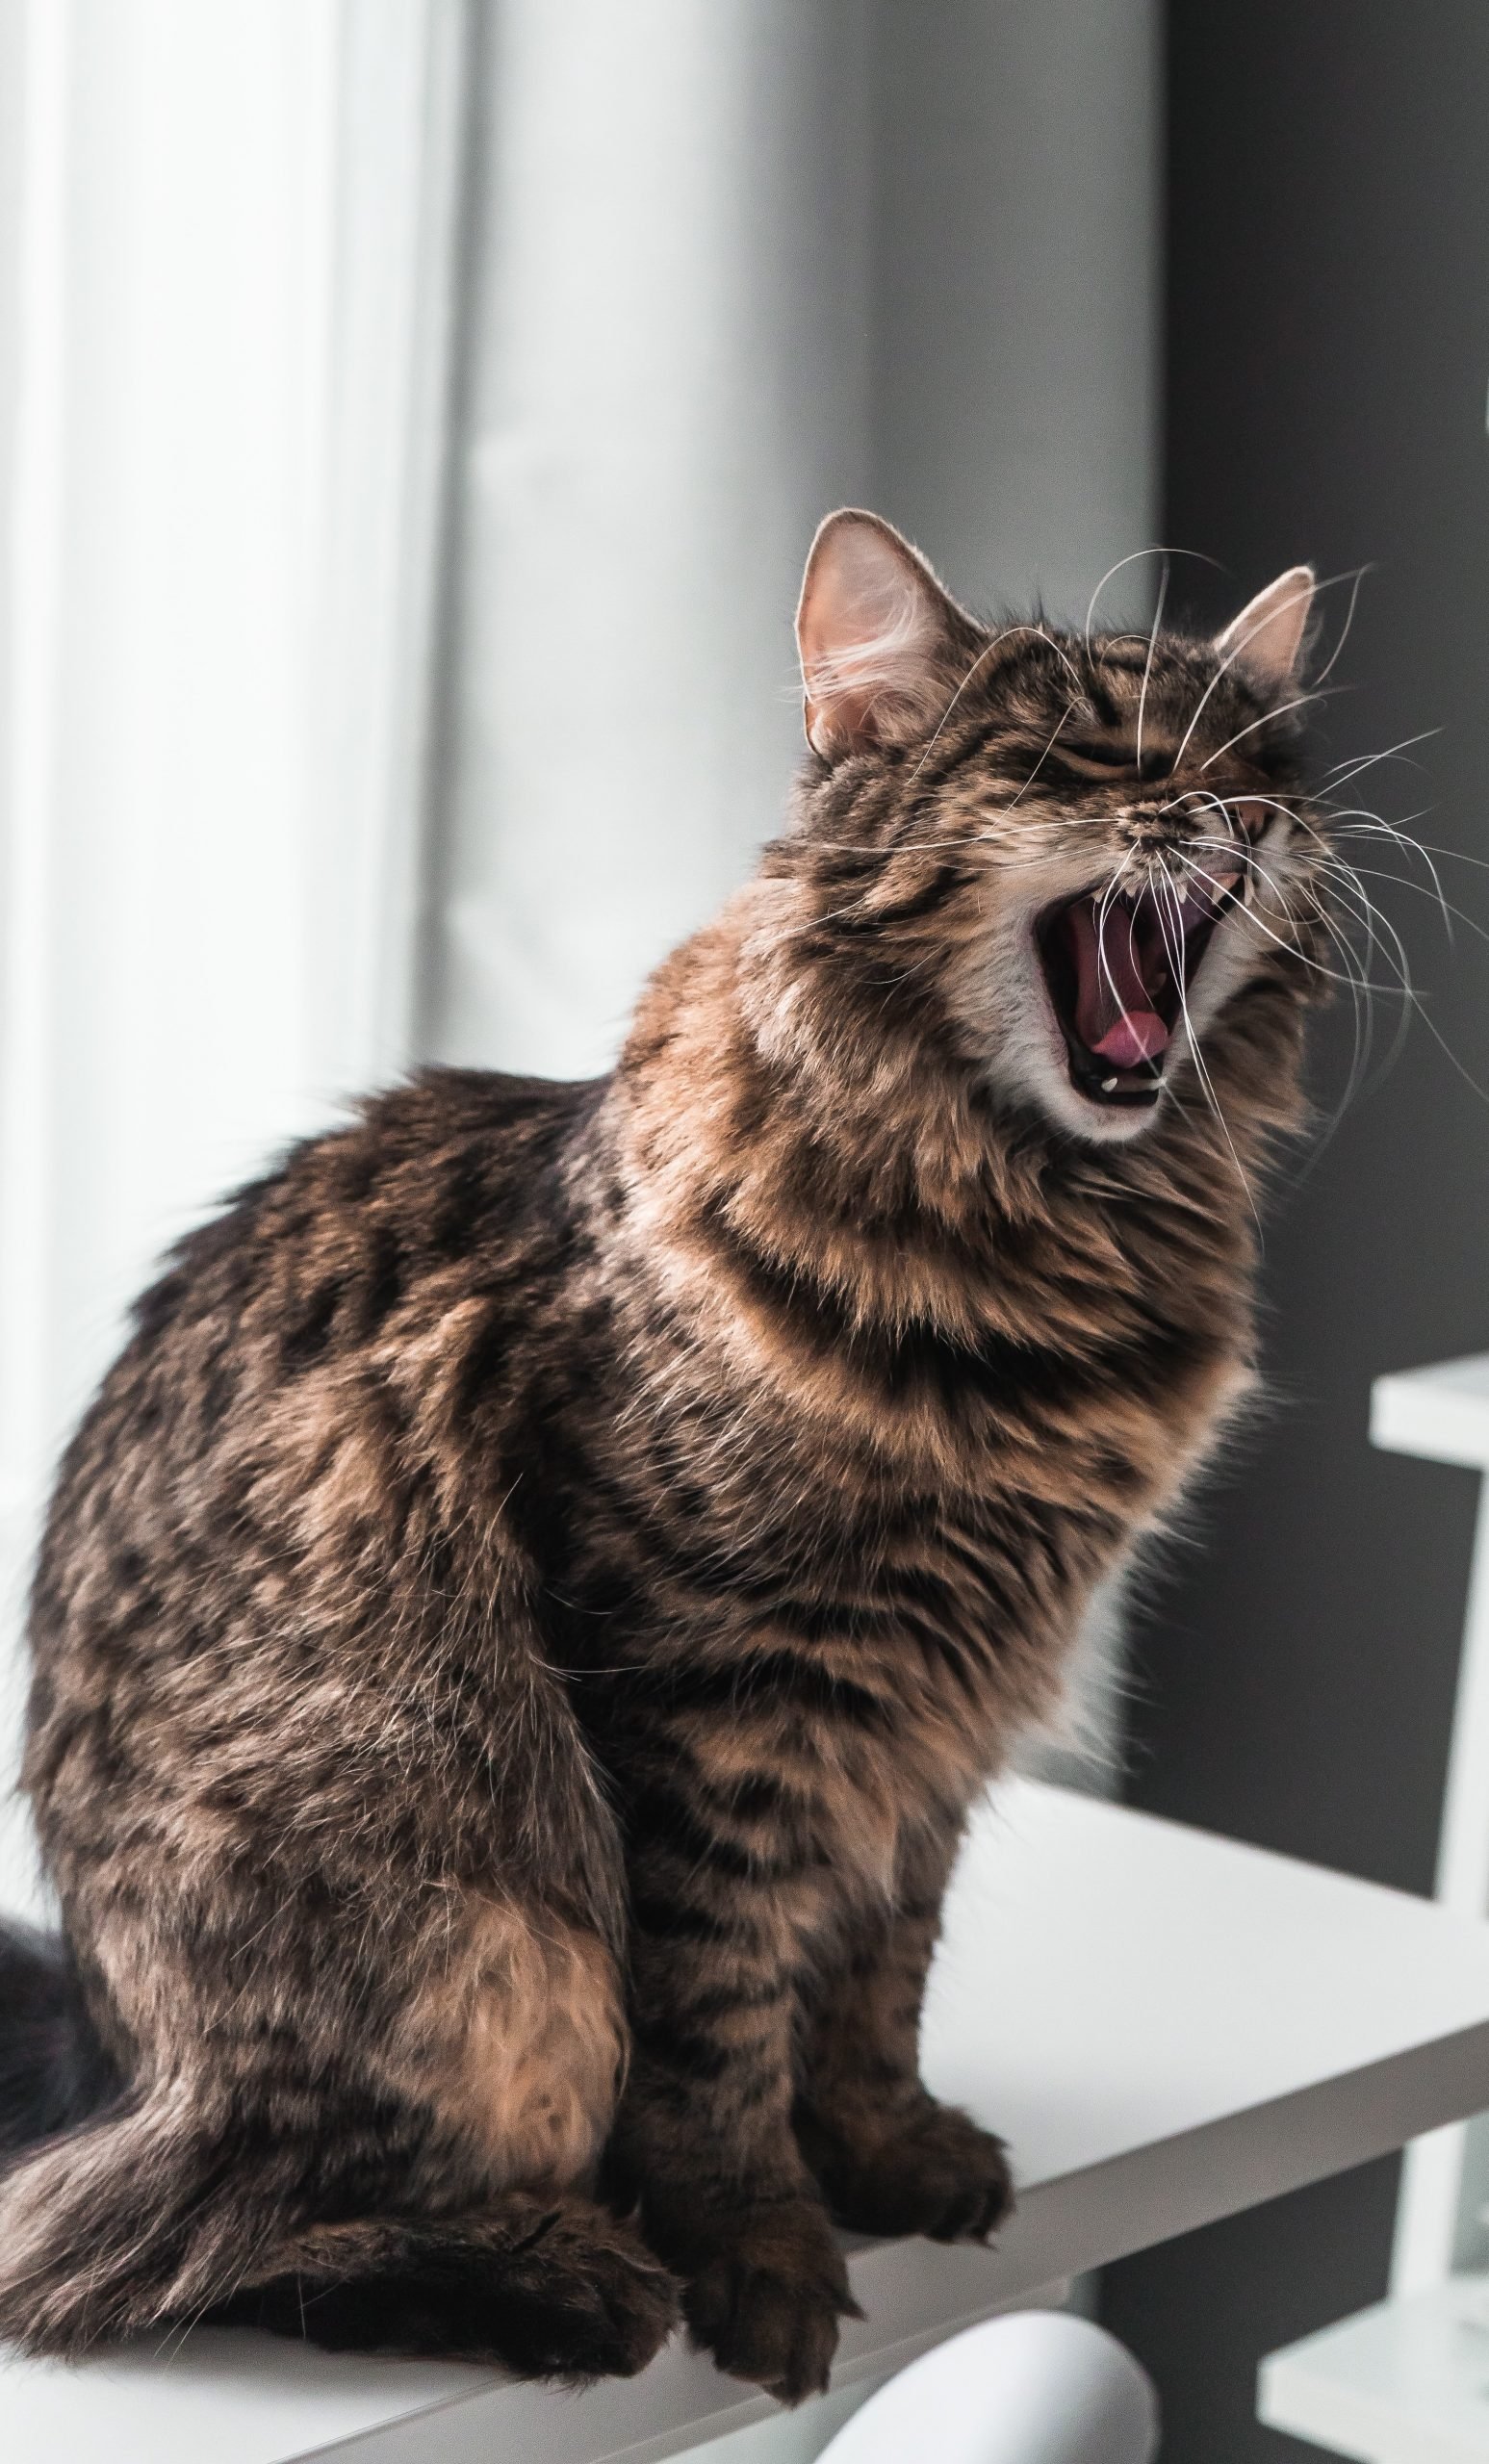 Mercado Golpe fuerte Interesante Mi gato estornuda: principales causas y cómo solucionarlo - Pampermut Blog